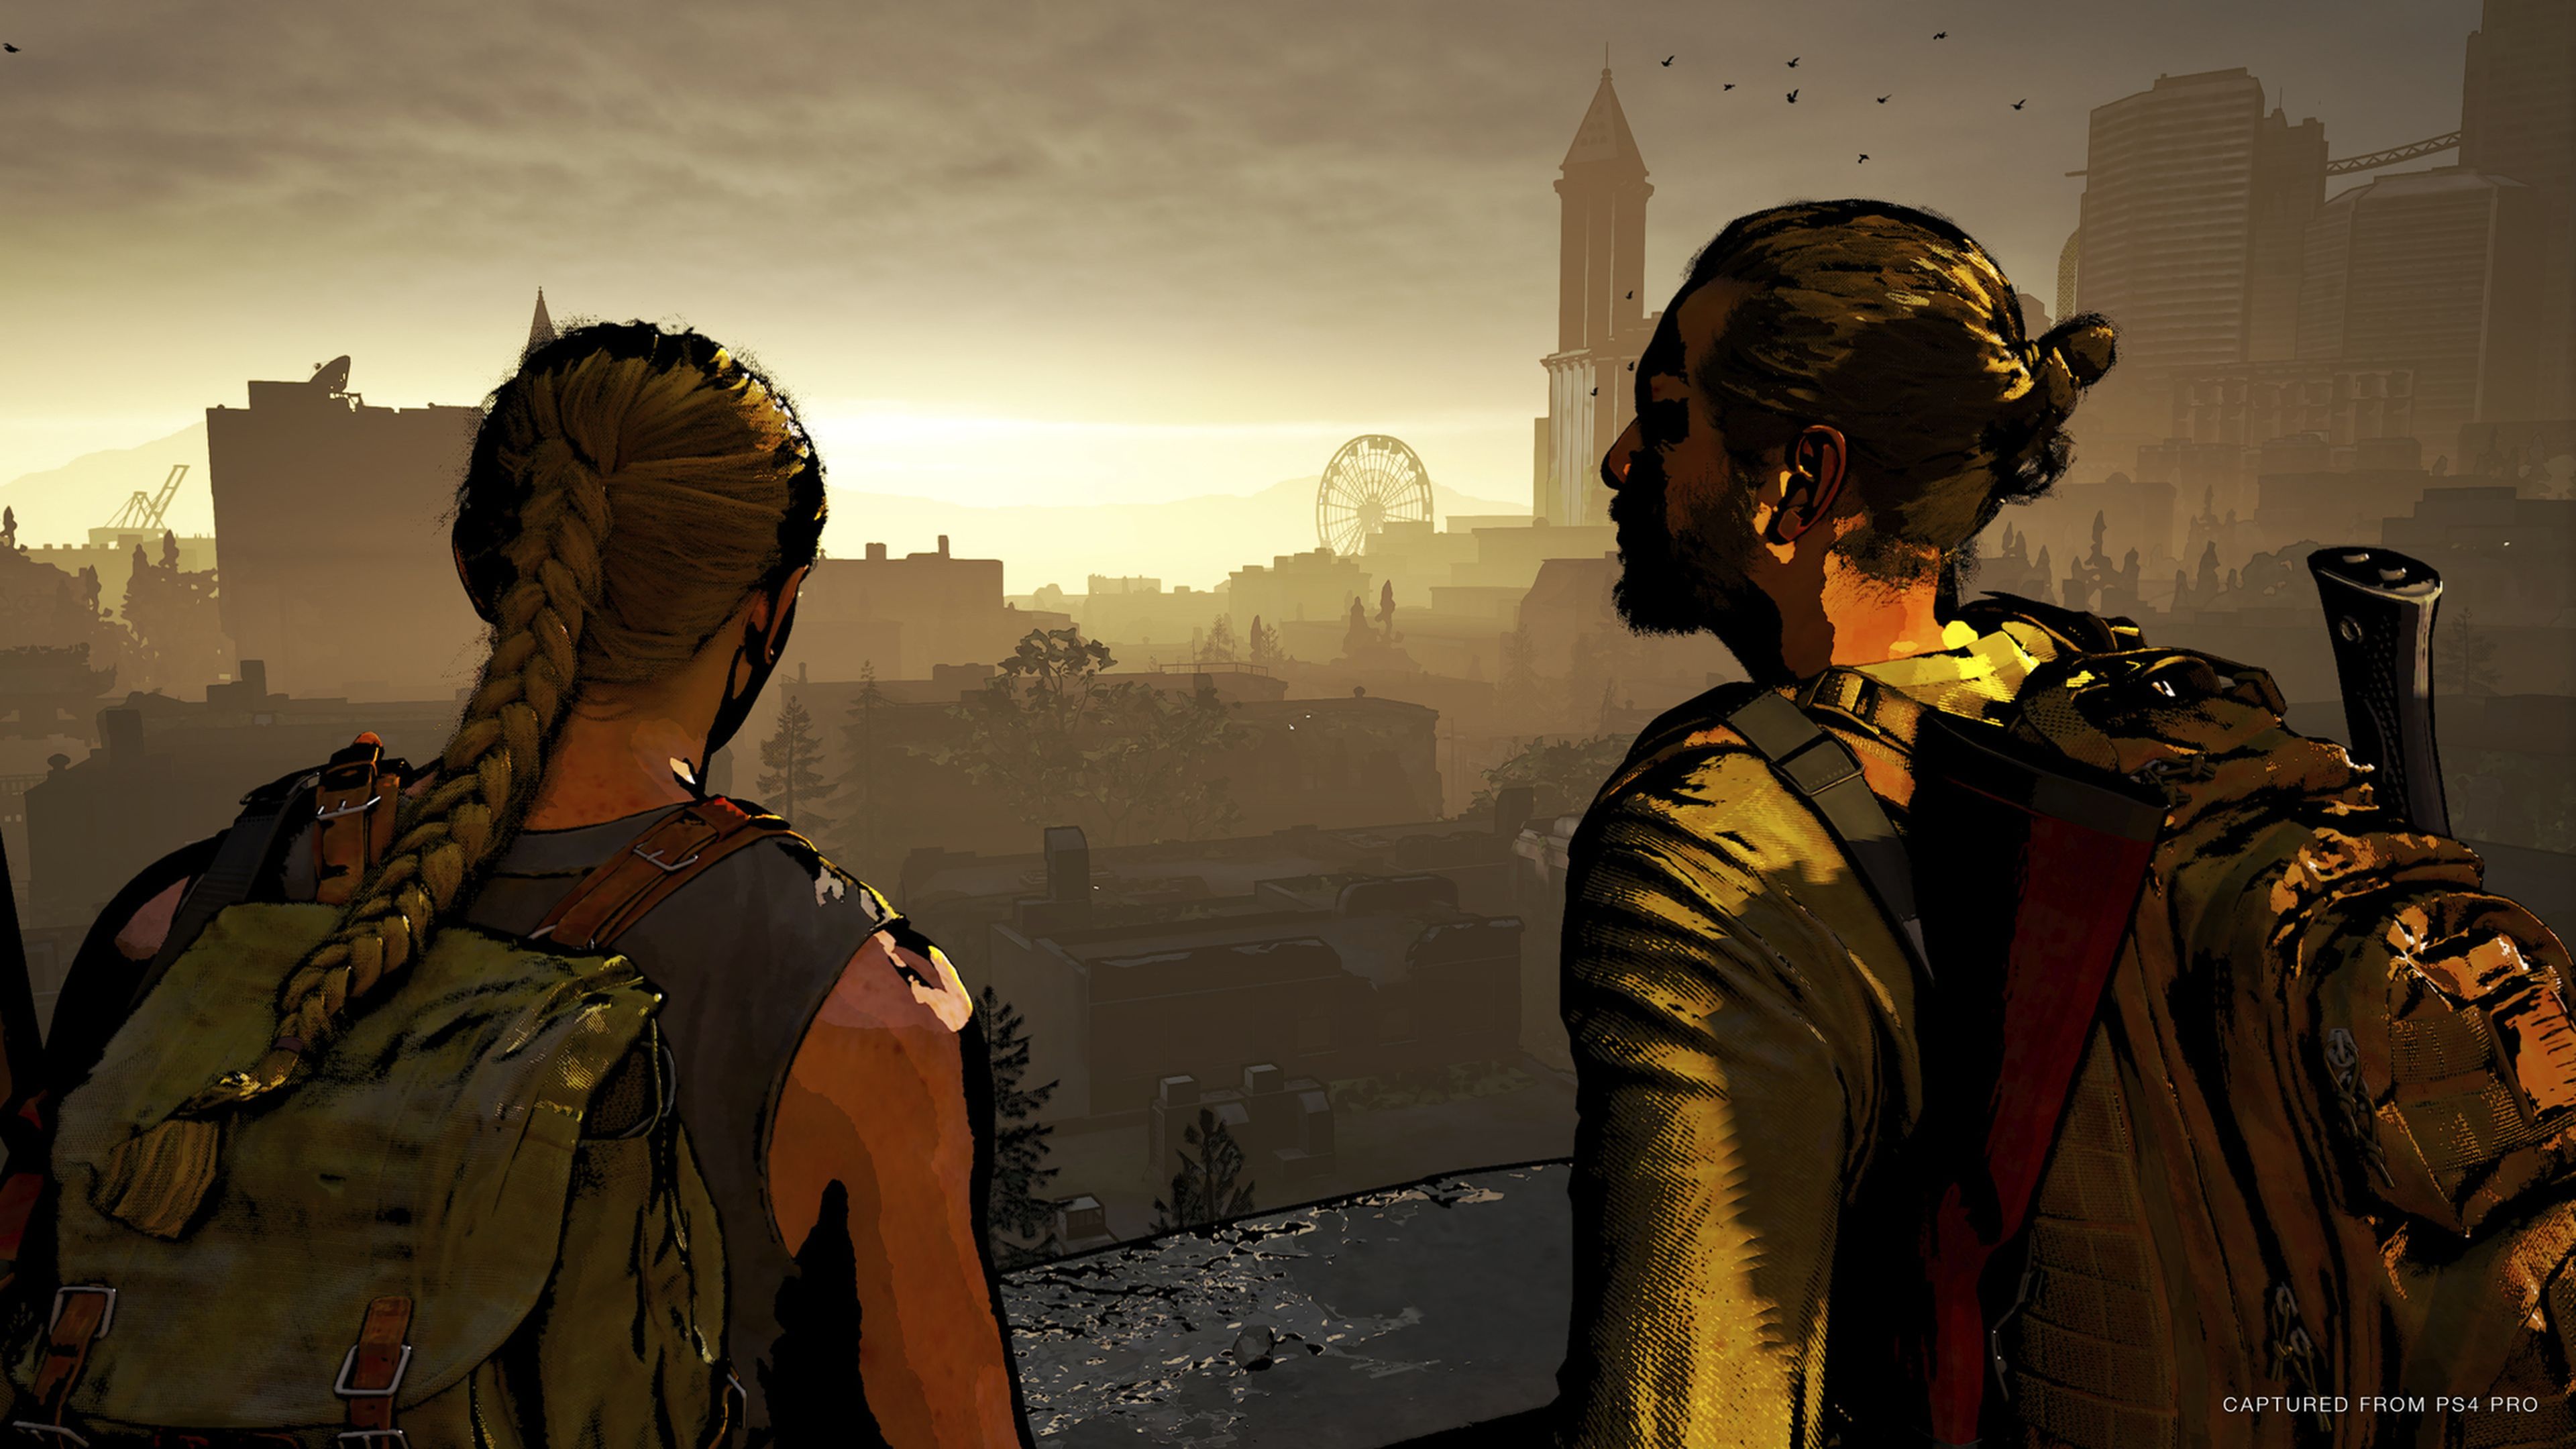 Longa seja sua sobrevivência Listamos tudo o que mudou em The Last of Us  Part II com a atualização 1.05